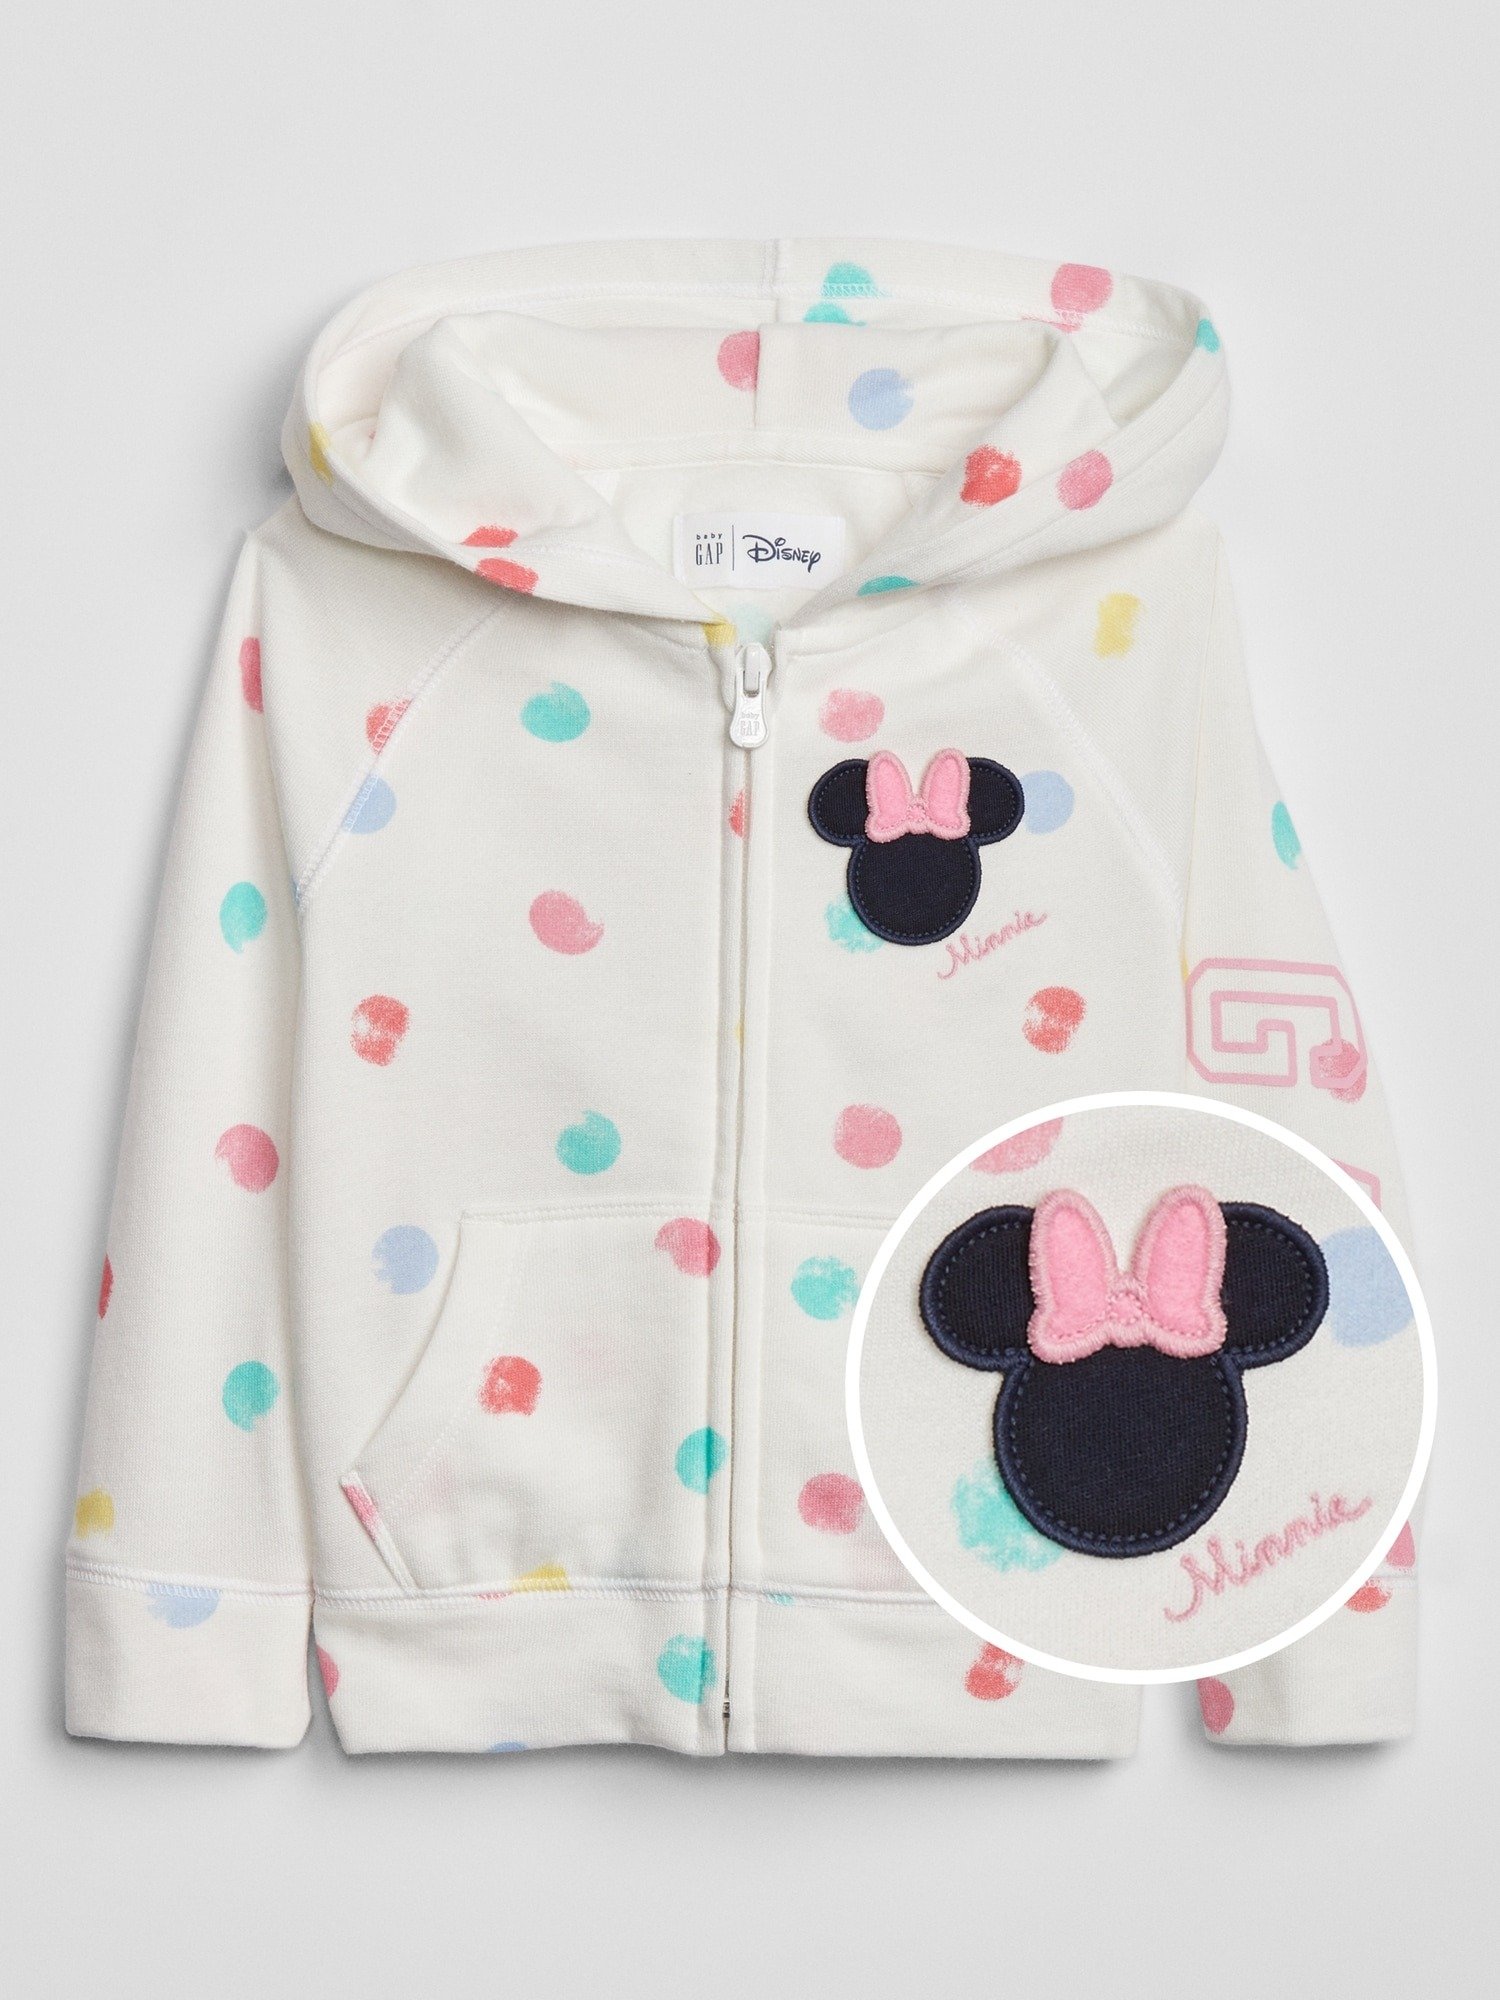 Disney Minnie Mouse Kapüşonlu Sweatshirt product image